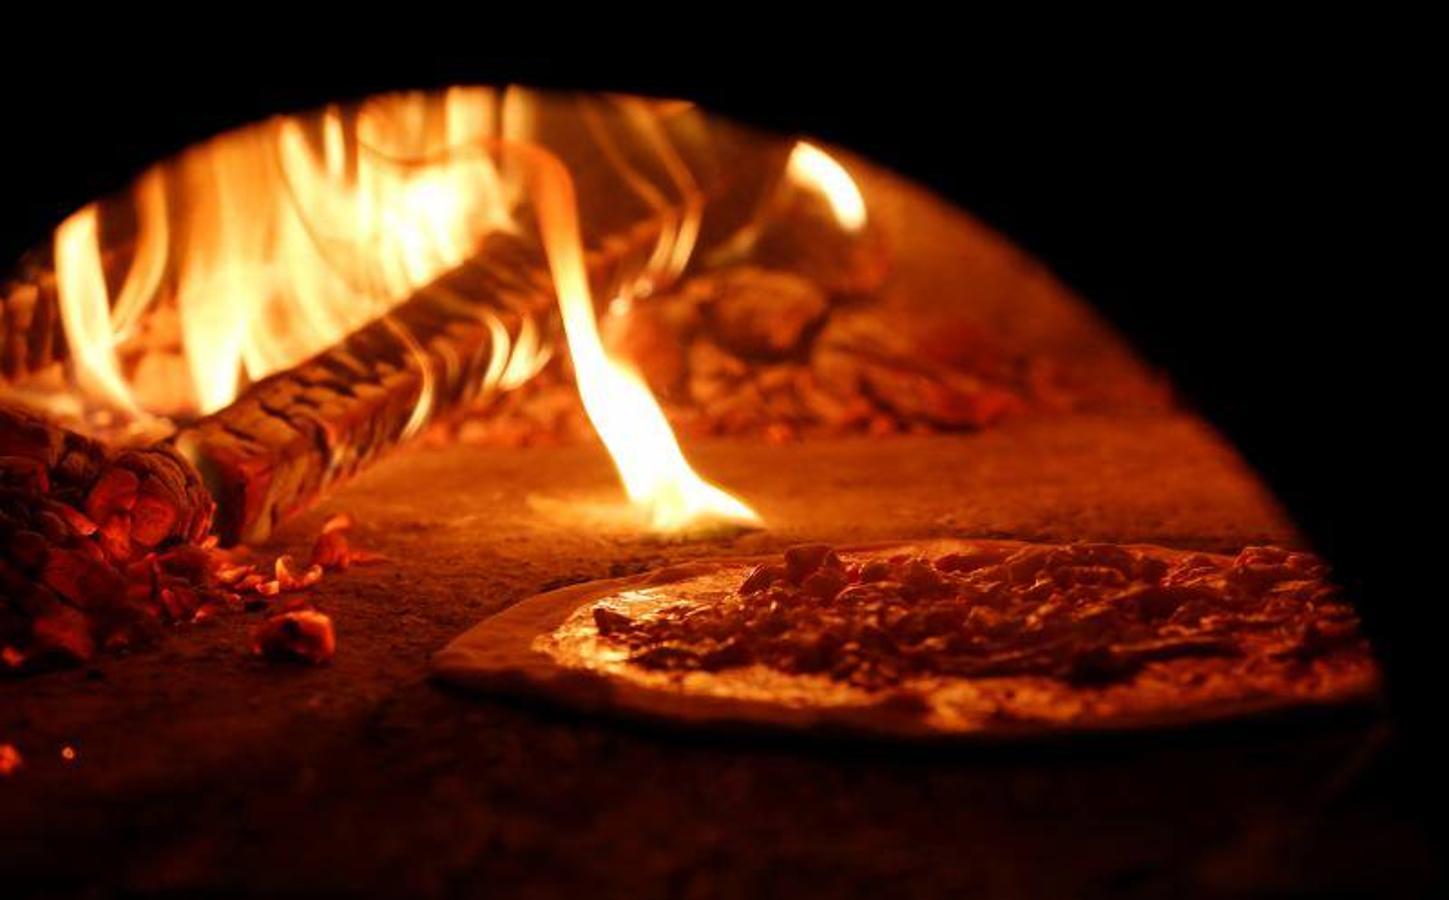 El arte de los pizzeros de Nápoles 'pizzaioli' ha sido reconocido como Patrimonio Cultural Inmaterial de la Humanidad por la Unesco, según anunció este jueves su Comité intergubernamental en la isla surcoreana de Jeju. 